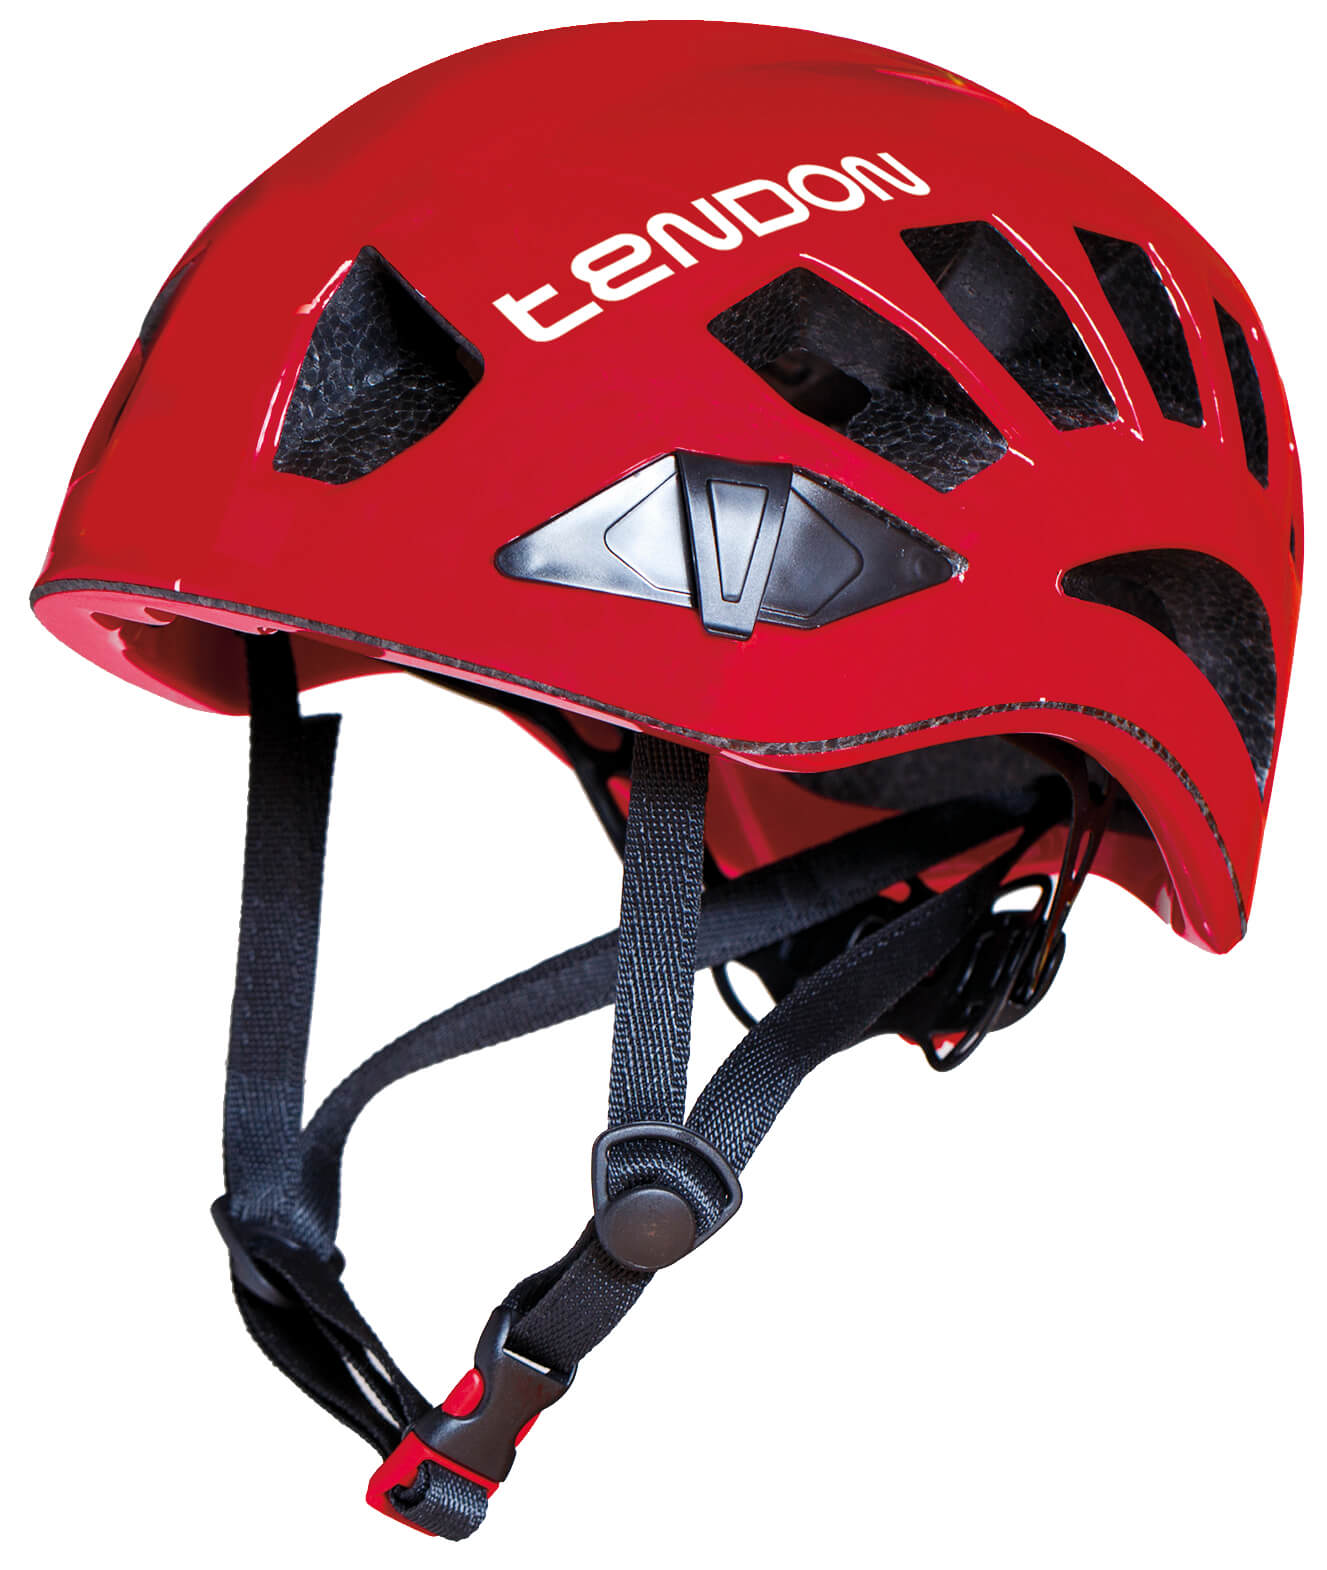 TENDON helma Orbix - červená